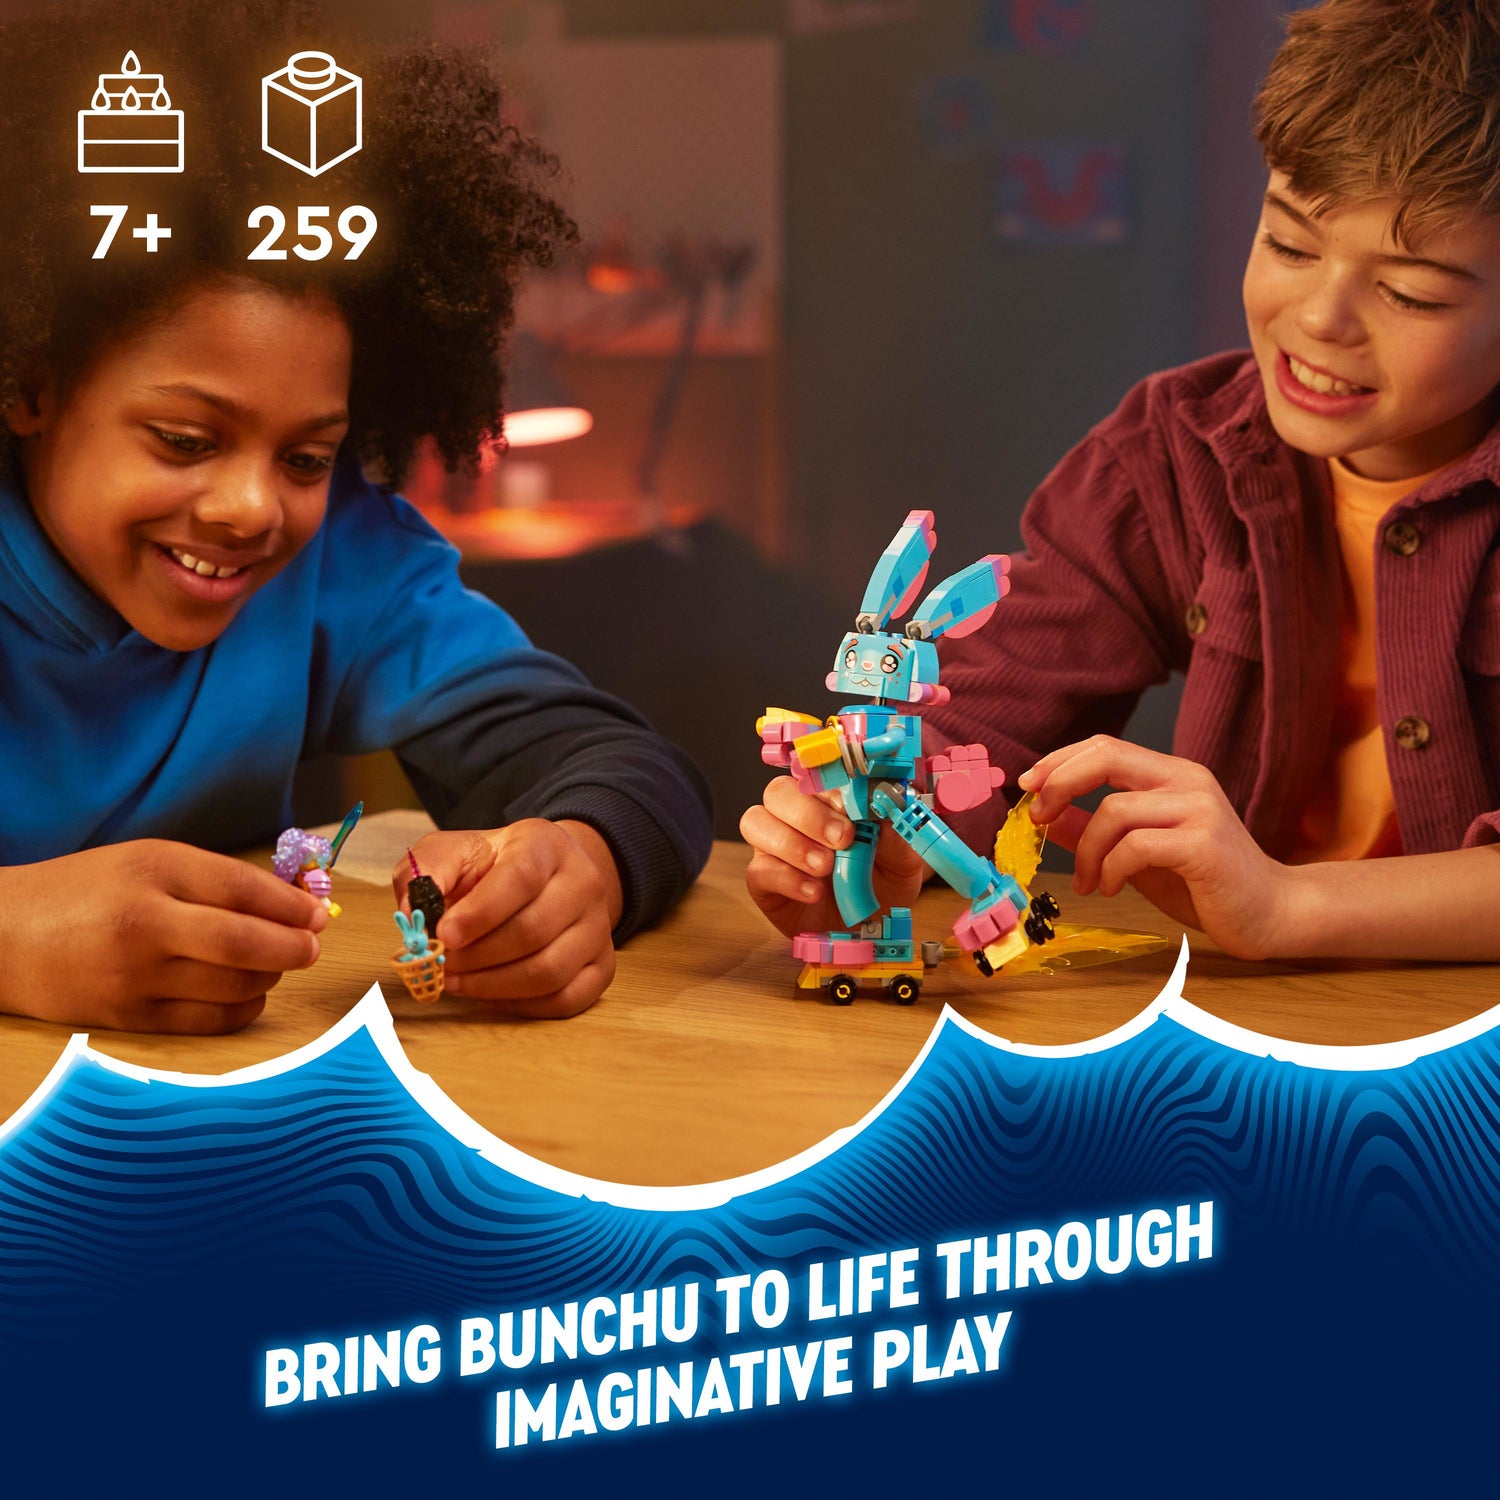 LEGO® DREAMZzz™ Izzie and Bunchu the Bunny Toy